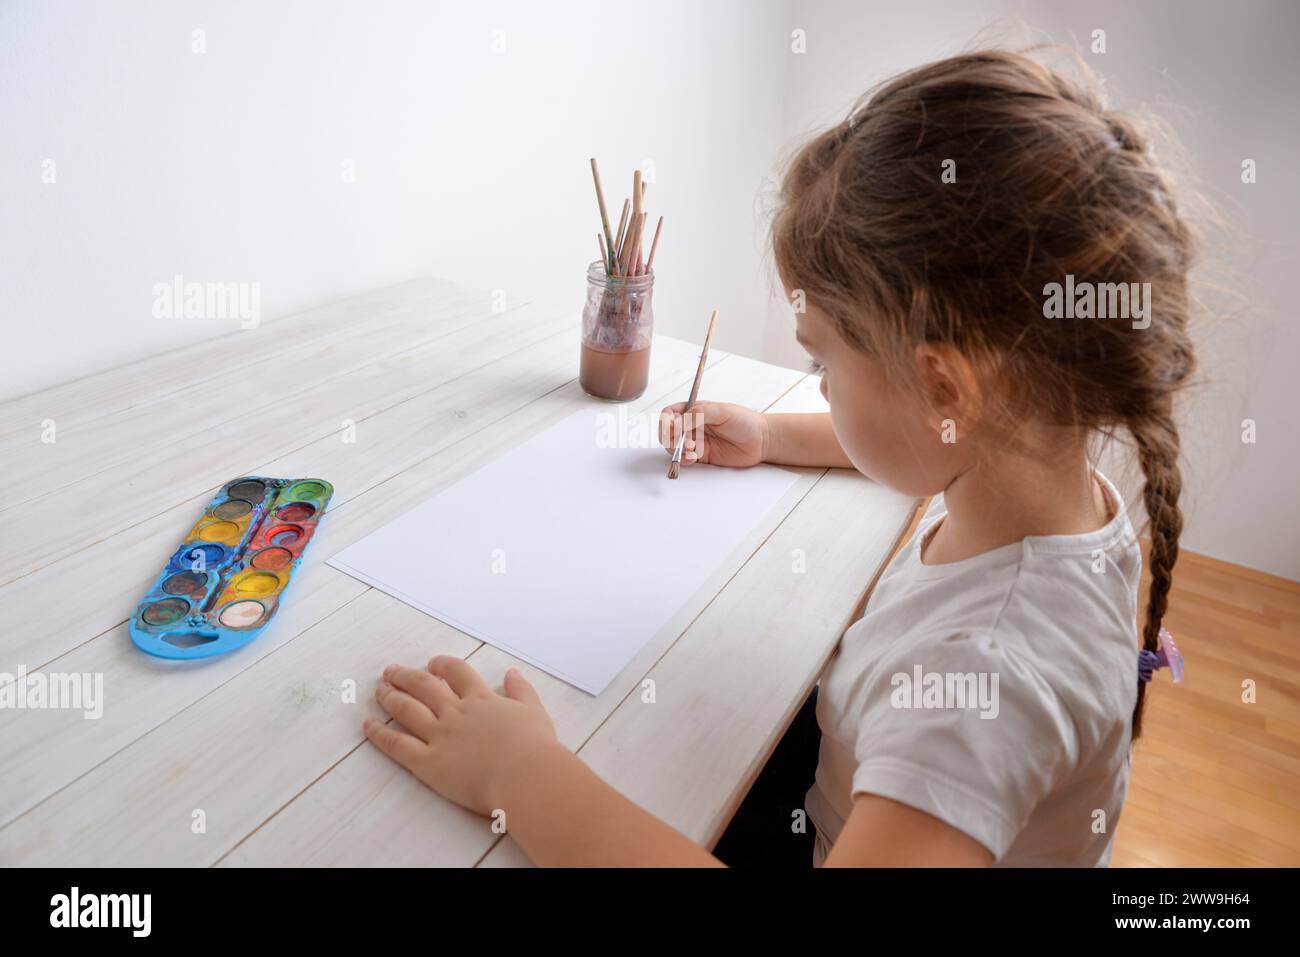 Das kleine Mädchen malt mit Wasserfarben auf weißem Papier. Vorstellung von Kreativität, Kunst, Kindheit, Fantasie und künstlerischem Ausdruck Stockfoto